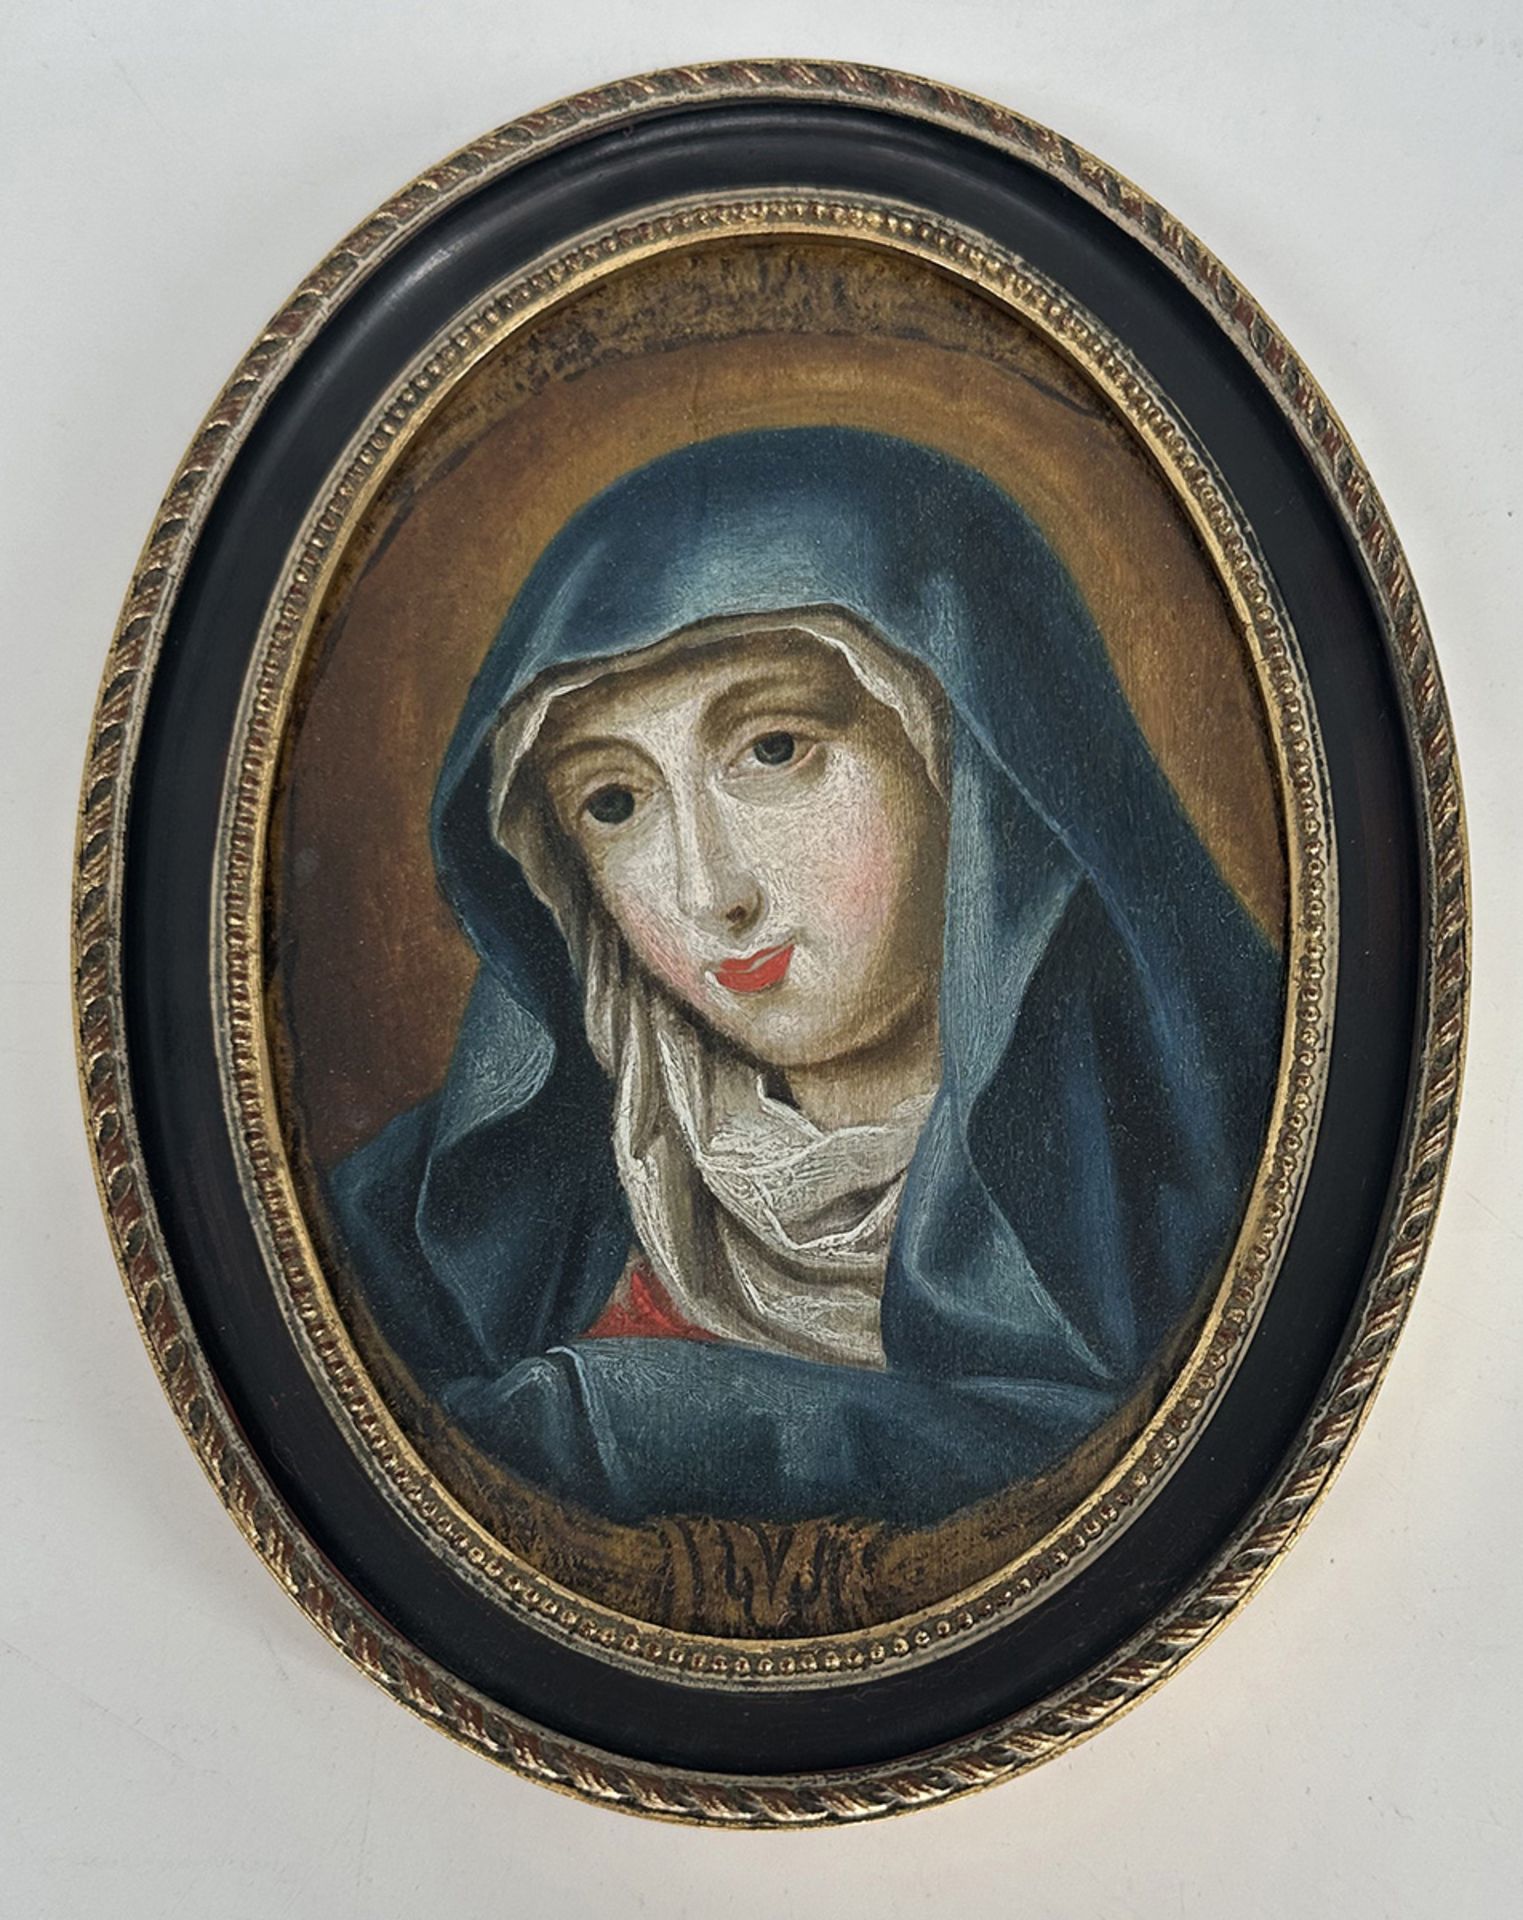 Unbekannter Künstler, 18. Jh., Madonnenkopf, Öl auf Holz, restauriert, 18 x 13 cm. Unknown artist,